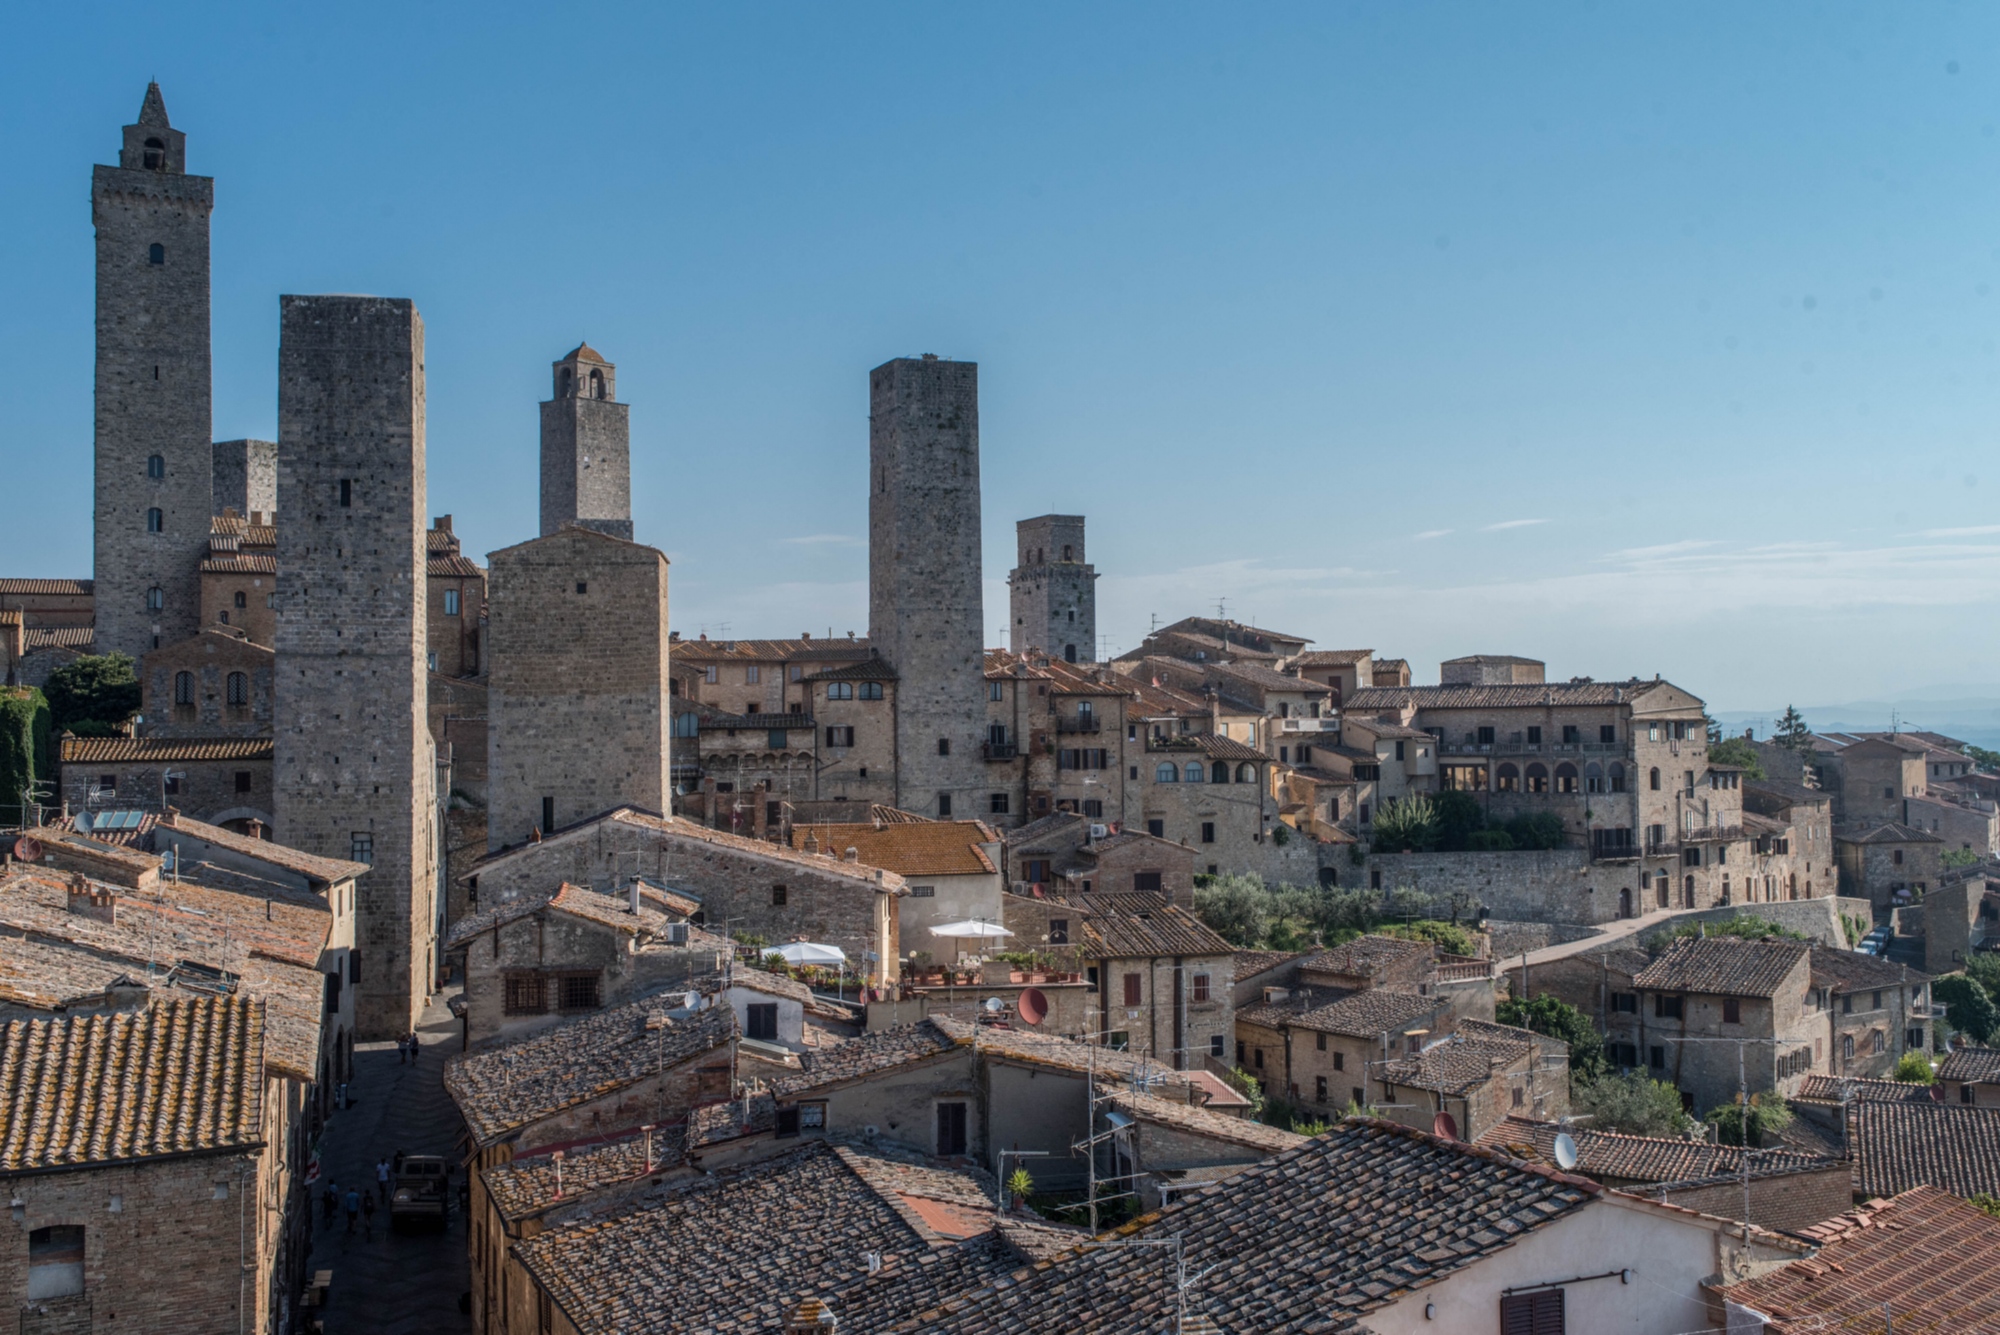 La Torre Campatelli con las otras torres de San Gimignano